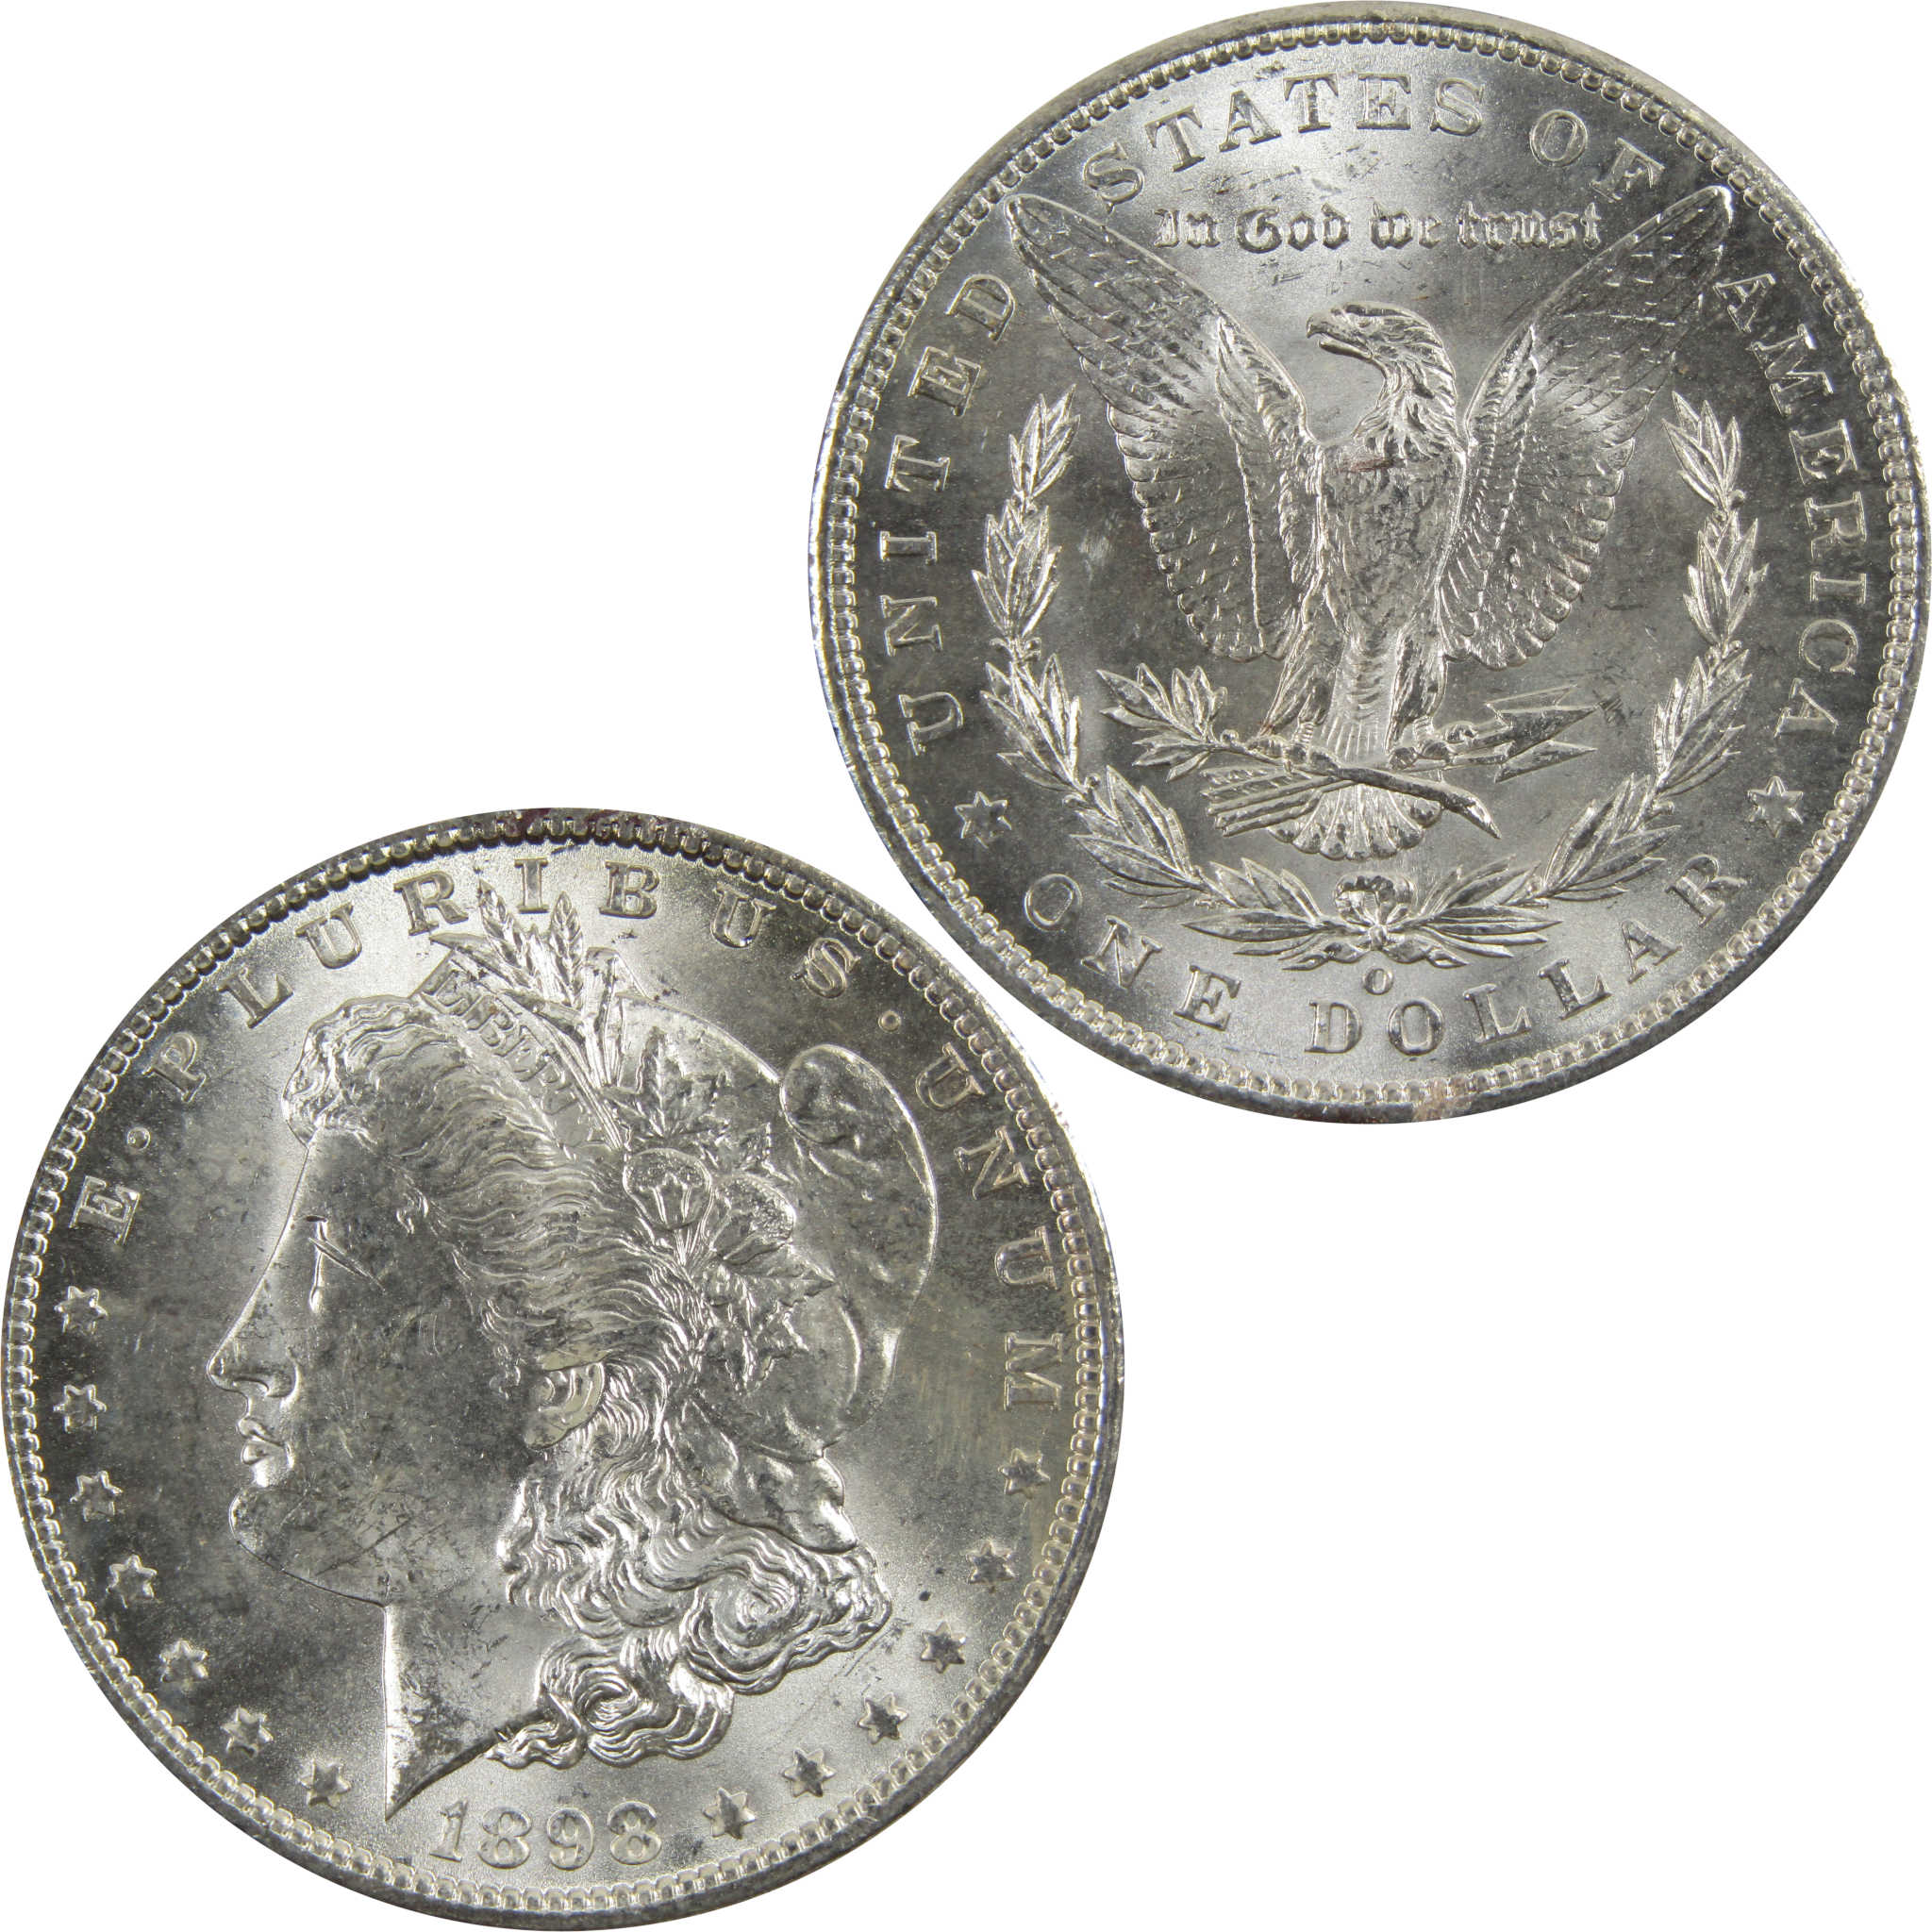 1898 O Morgan Dollar BU Uncirculated 90% Silver $1 Coin SKU:I5288 - Morgan coin - Morgan silver dollar - Morgan silver dollar for sale - Profile Coins &amp; Collectibles